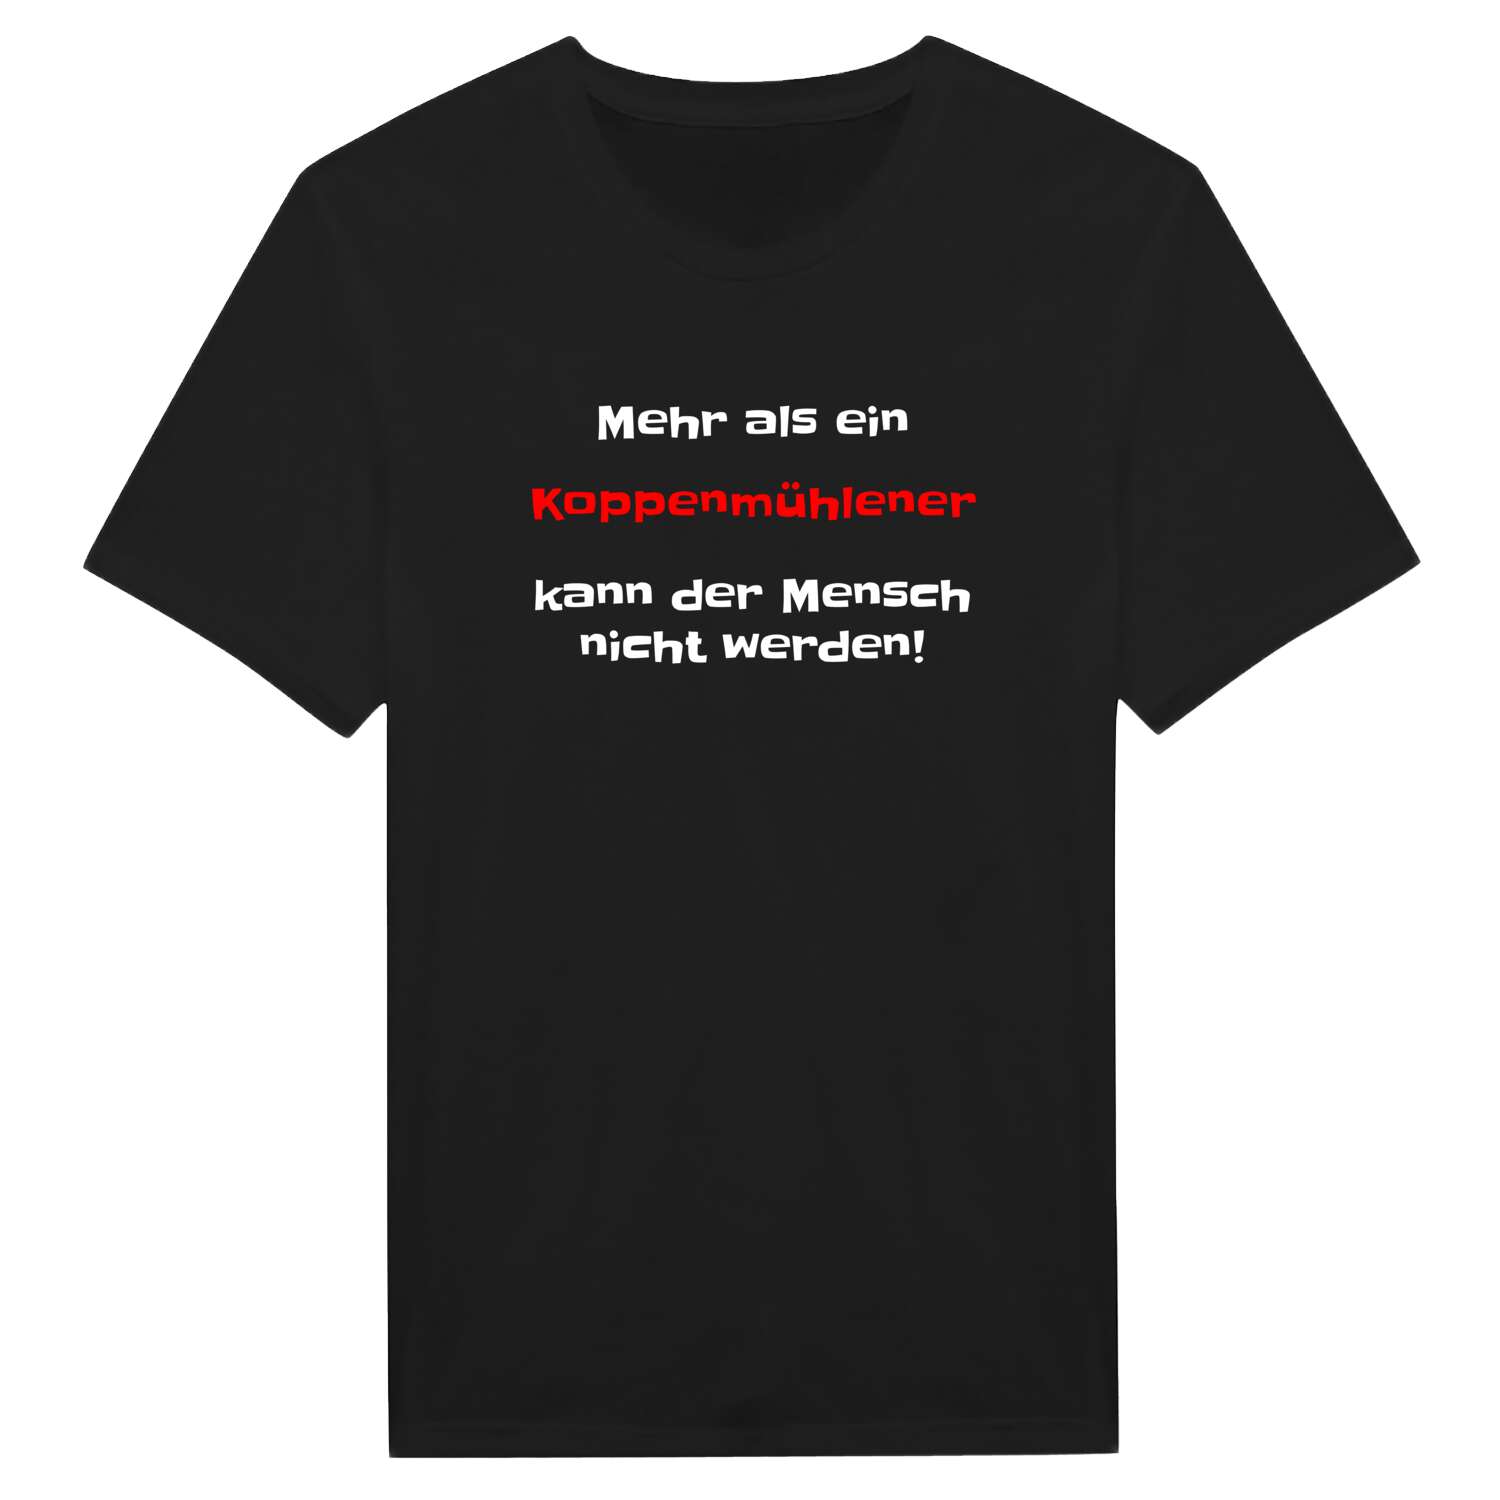 Koppenmühle T-Shirt »Mehr als ein«